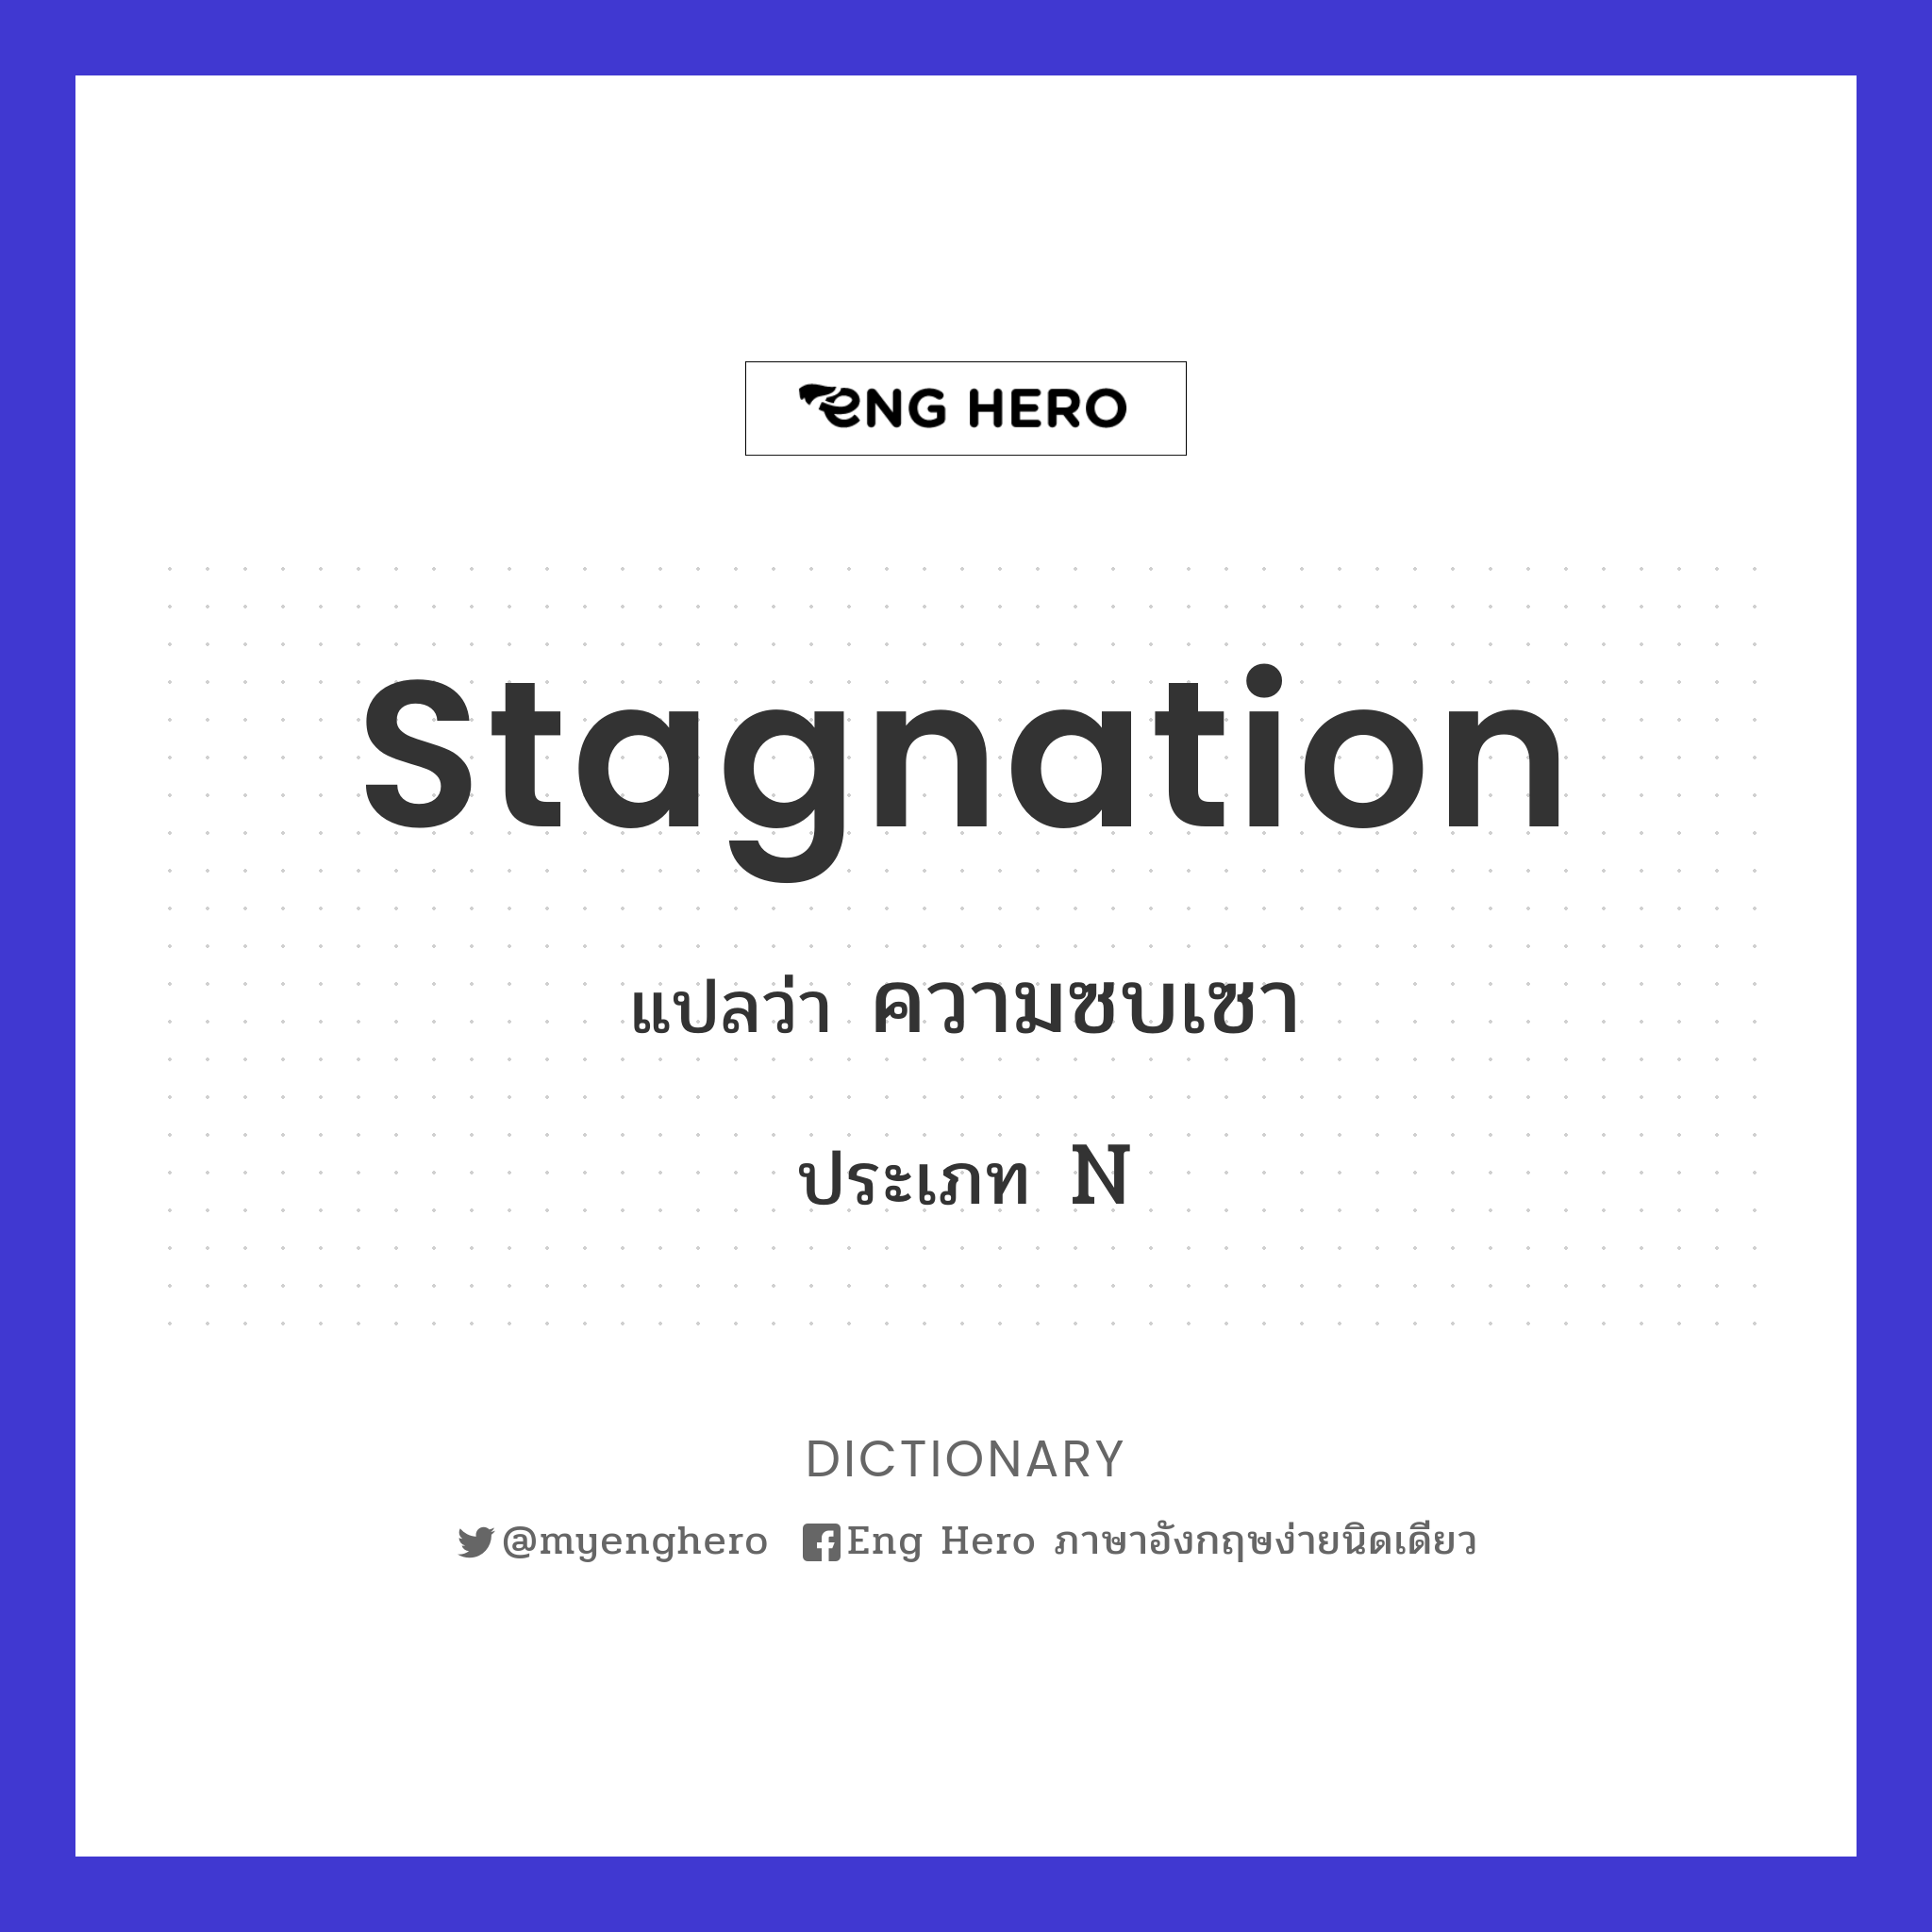 stagnation